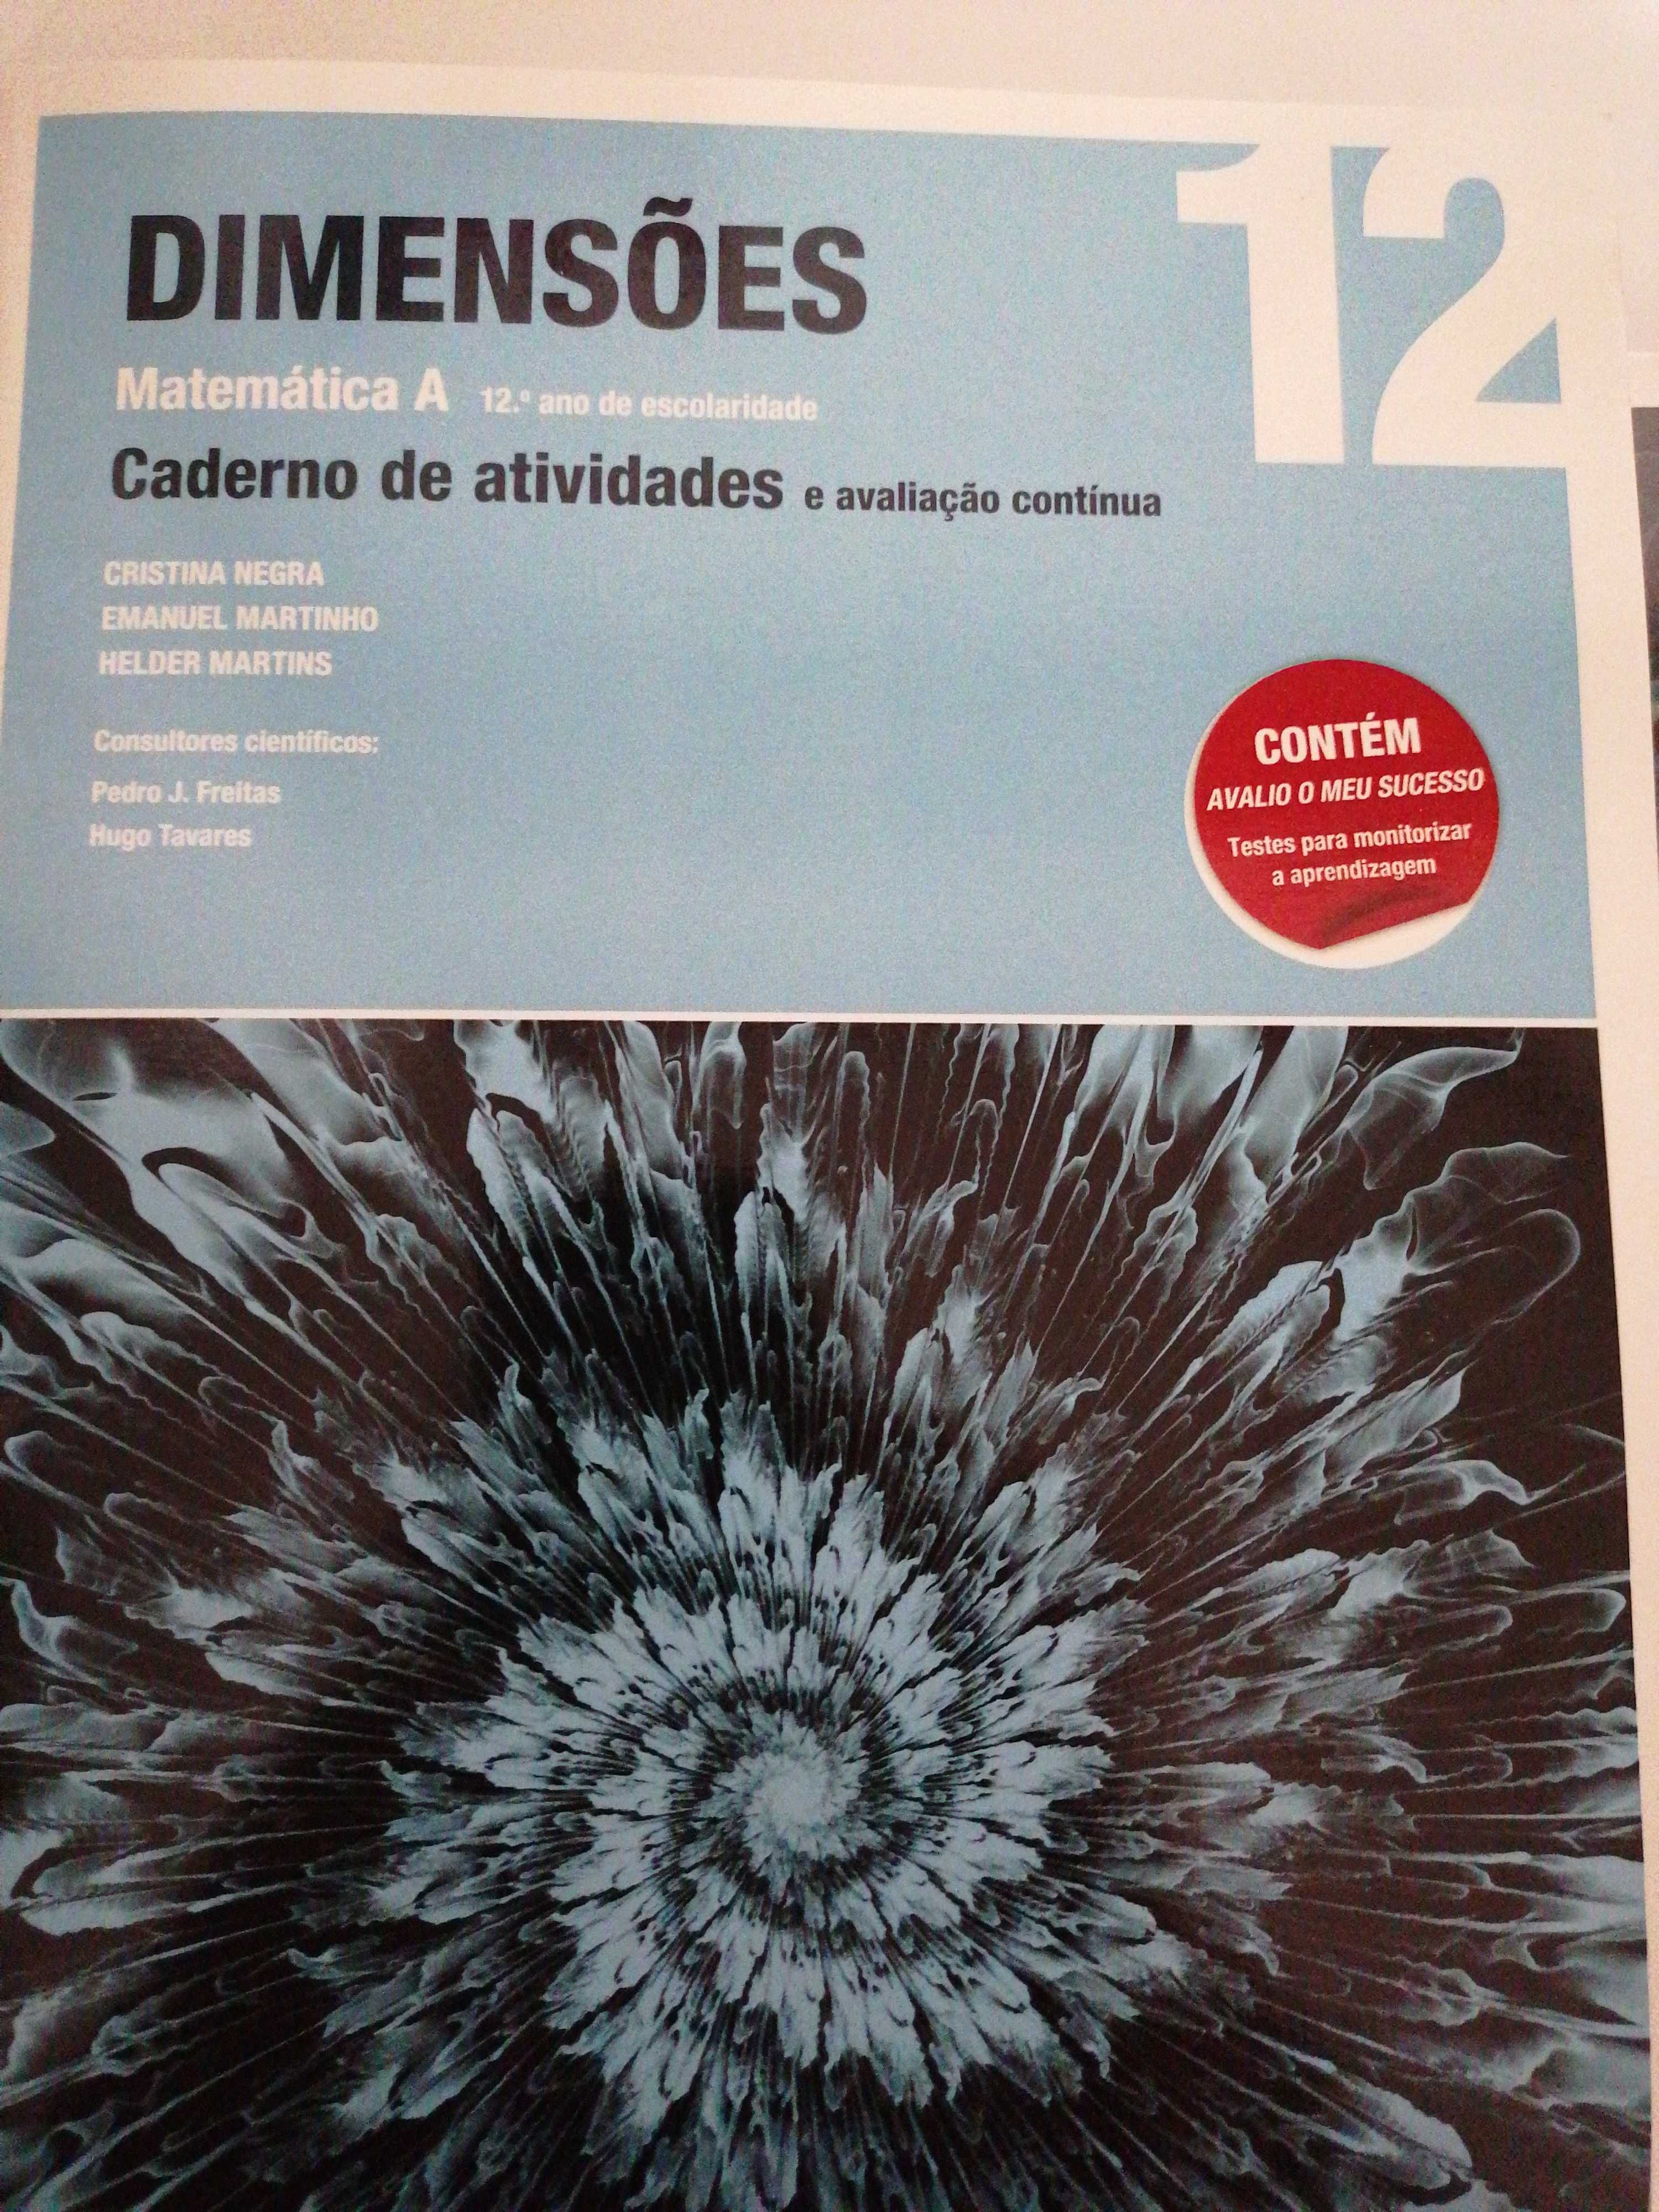 Manual Matemática A +C. A. 12.ano Dimensões Novo